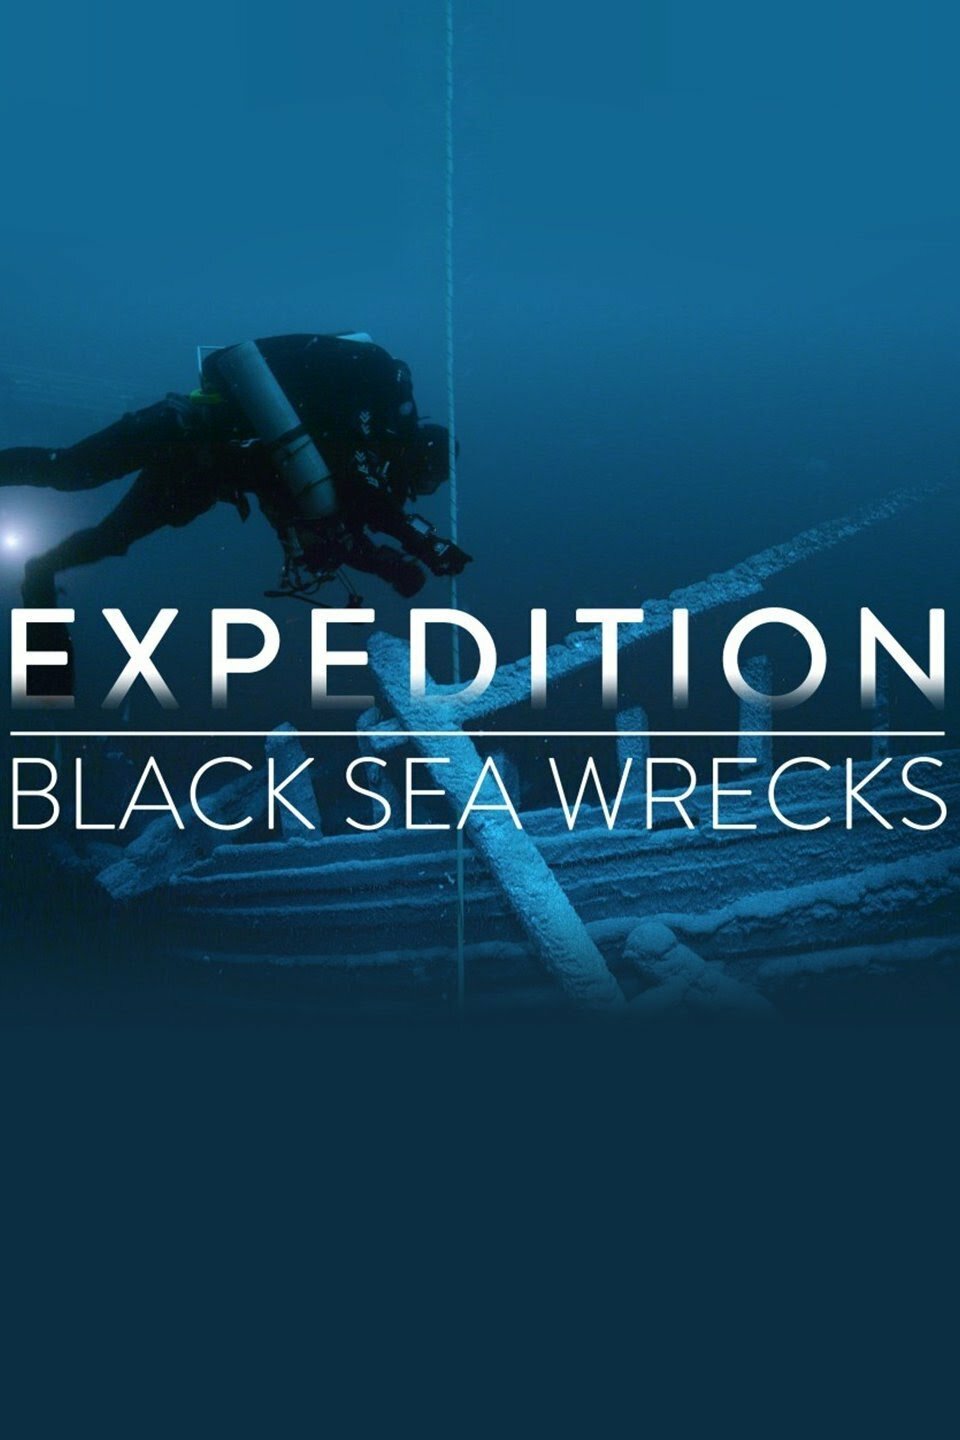 Lost World: Deeper into the Black Sea